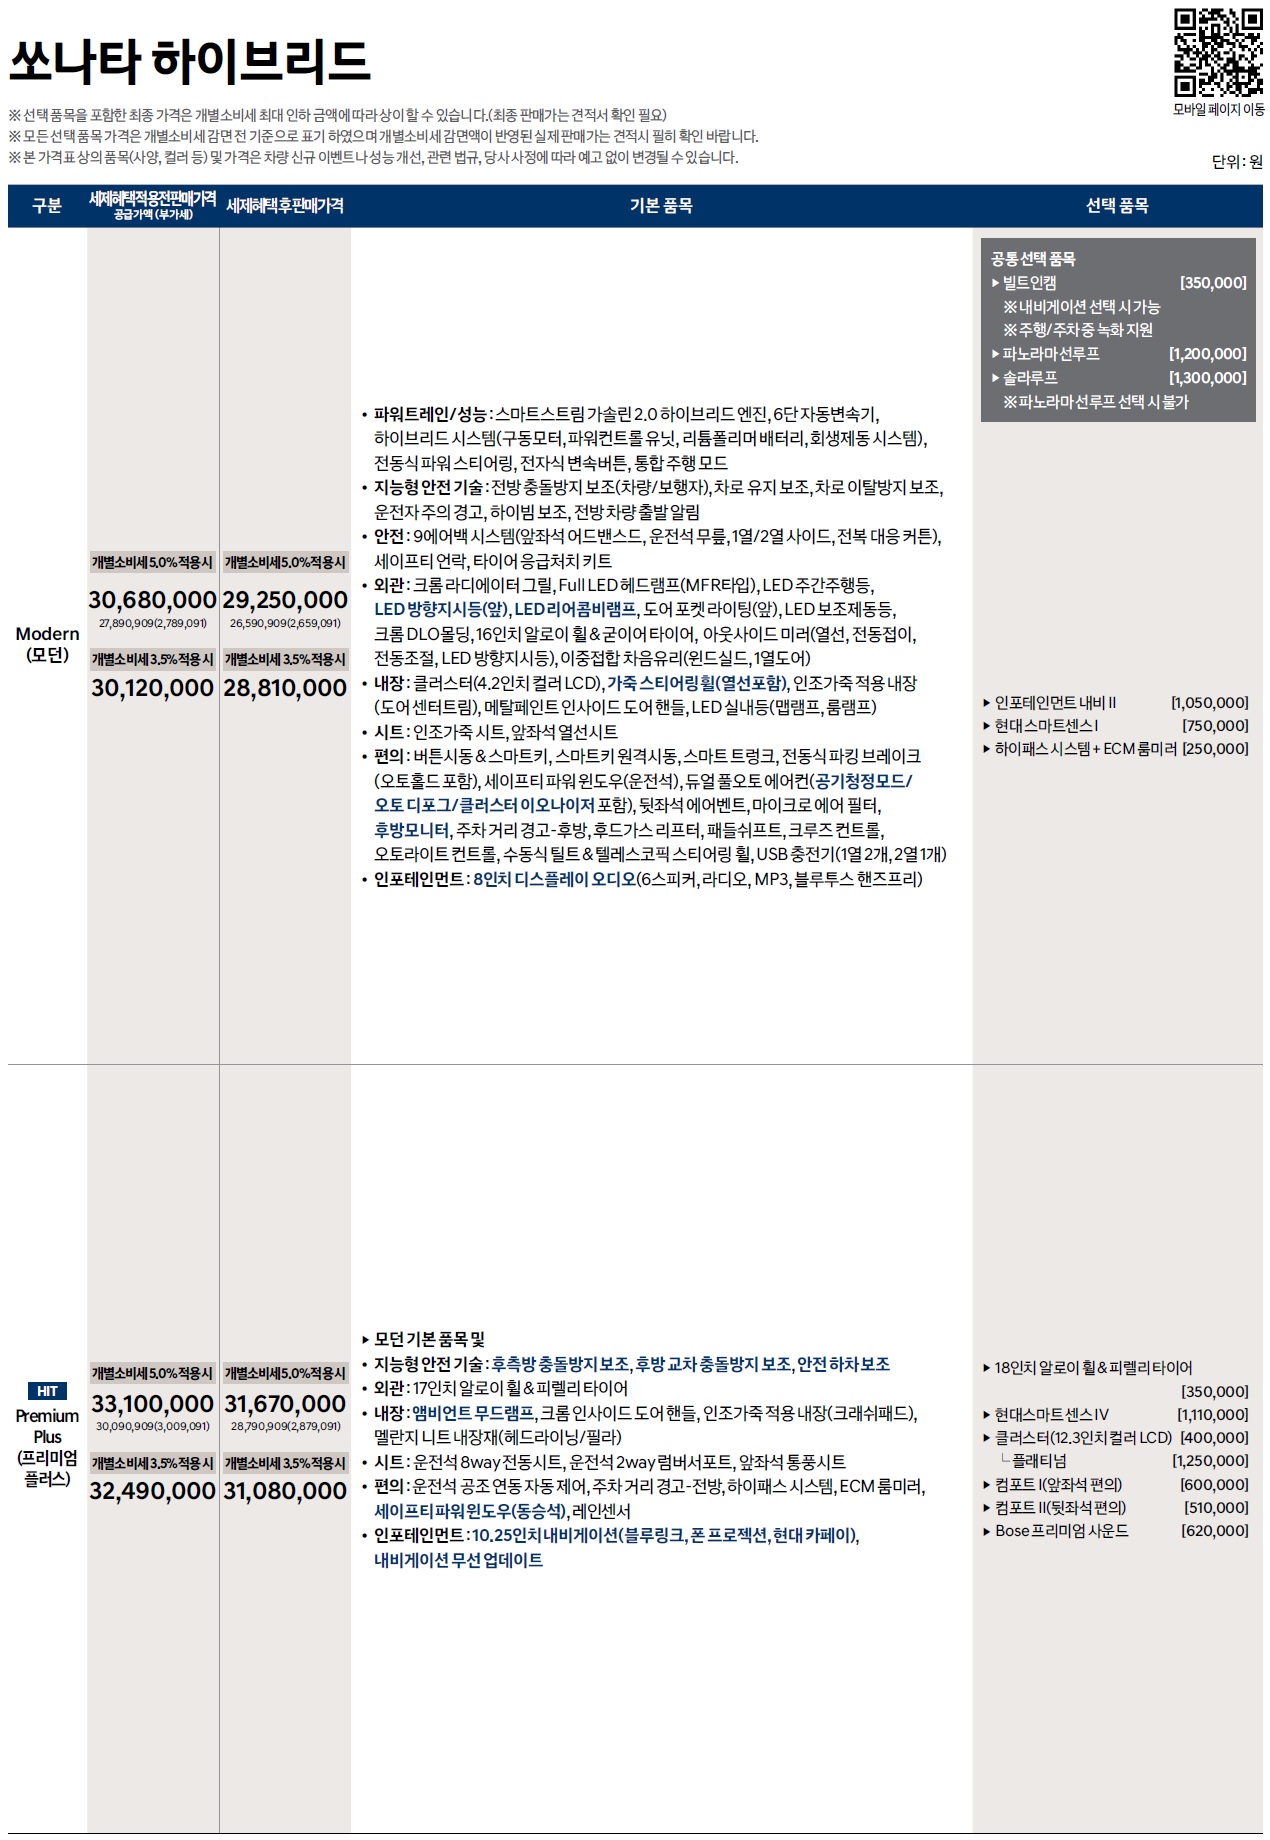 쏘나타 하이브리드 가격표 - 2022년 07월 (2023년형) -1.jpg